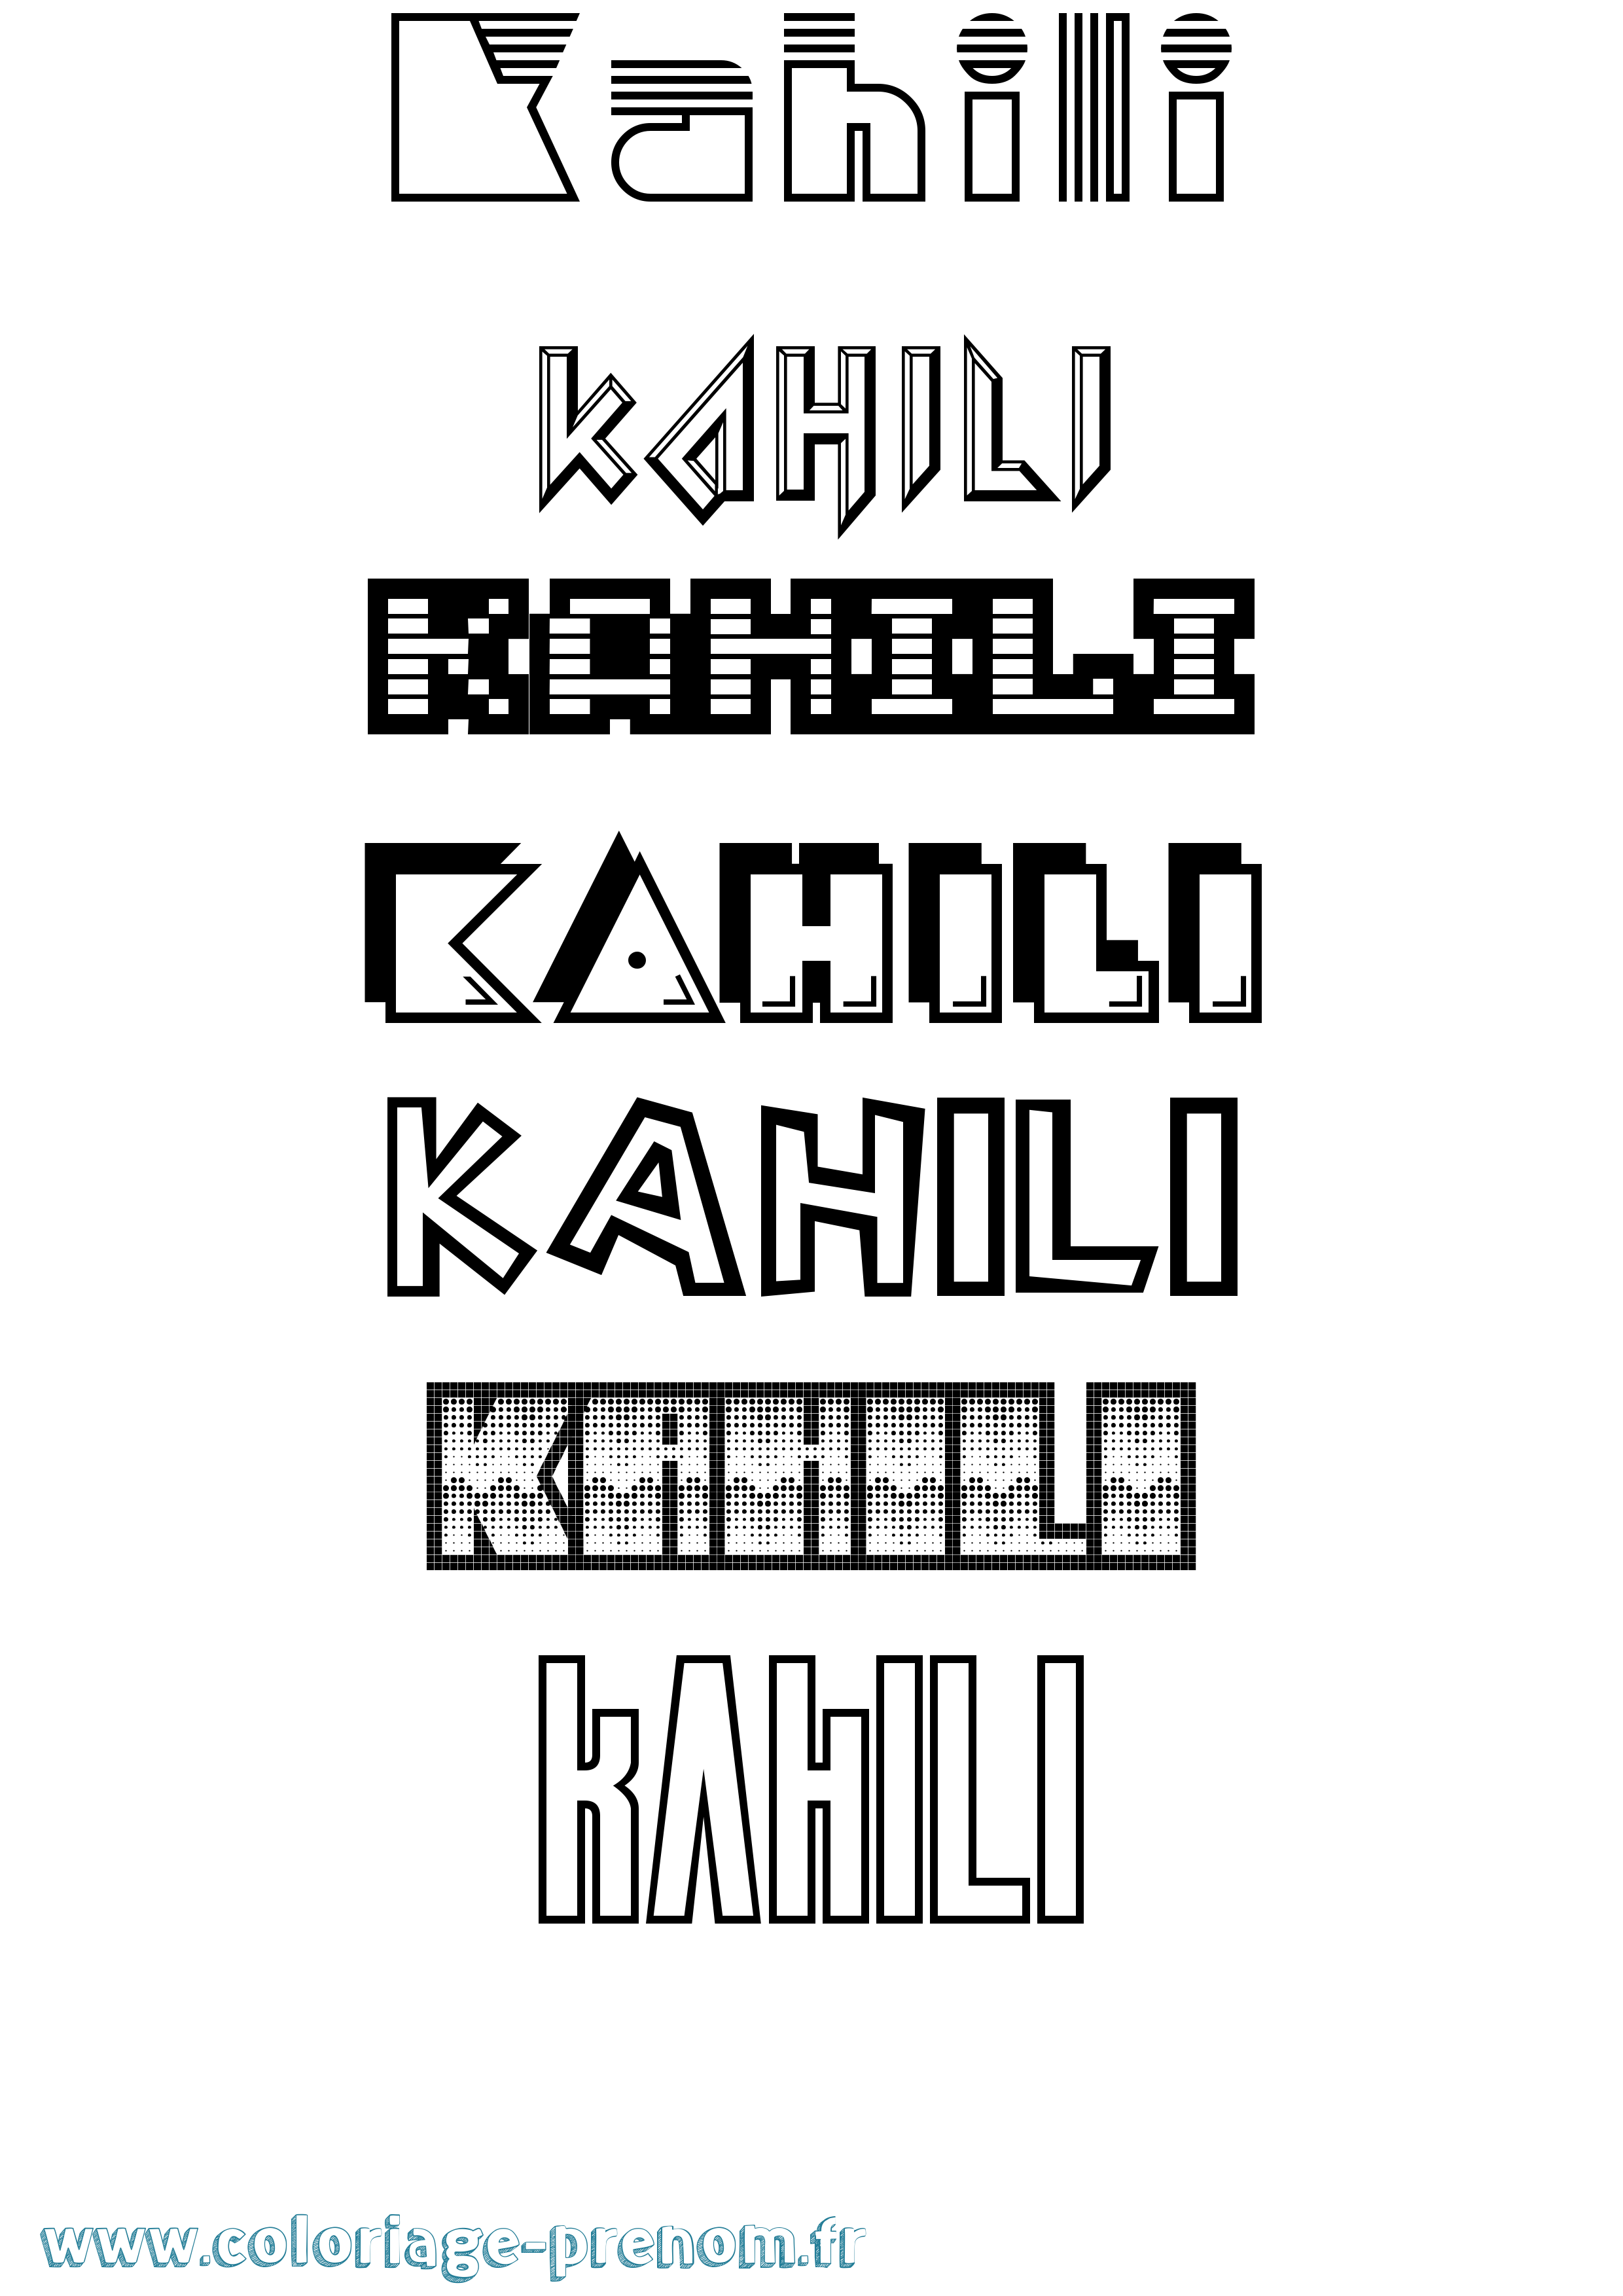 Coloriage prénom Kahili Jeux Vidéos